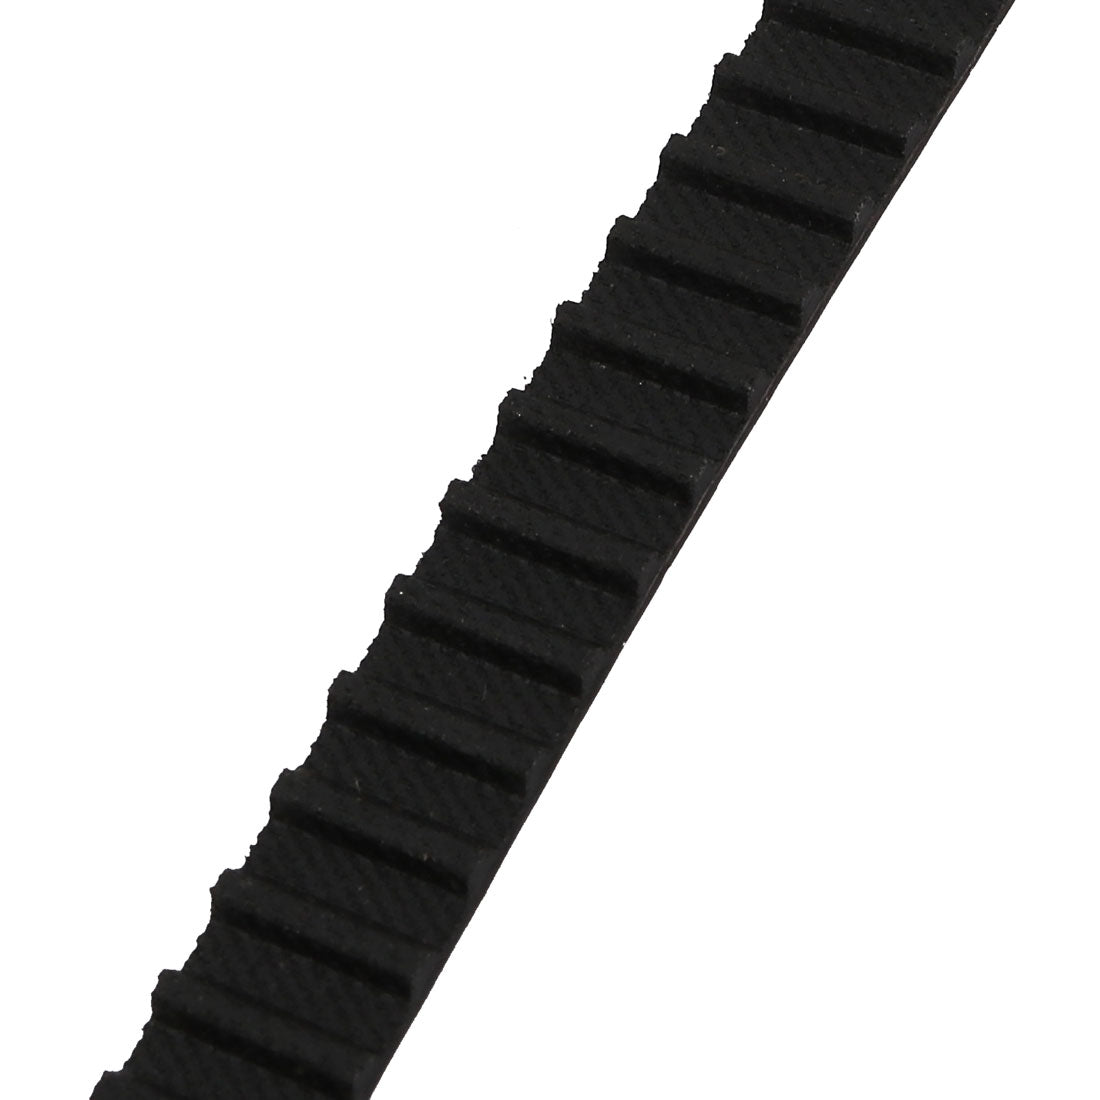 uxcell Uxcell 414XL 207 Teeth Stepper Timing Belt Geared-Belt 1051.56mm Perimeter 10mm Width